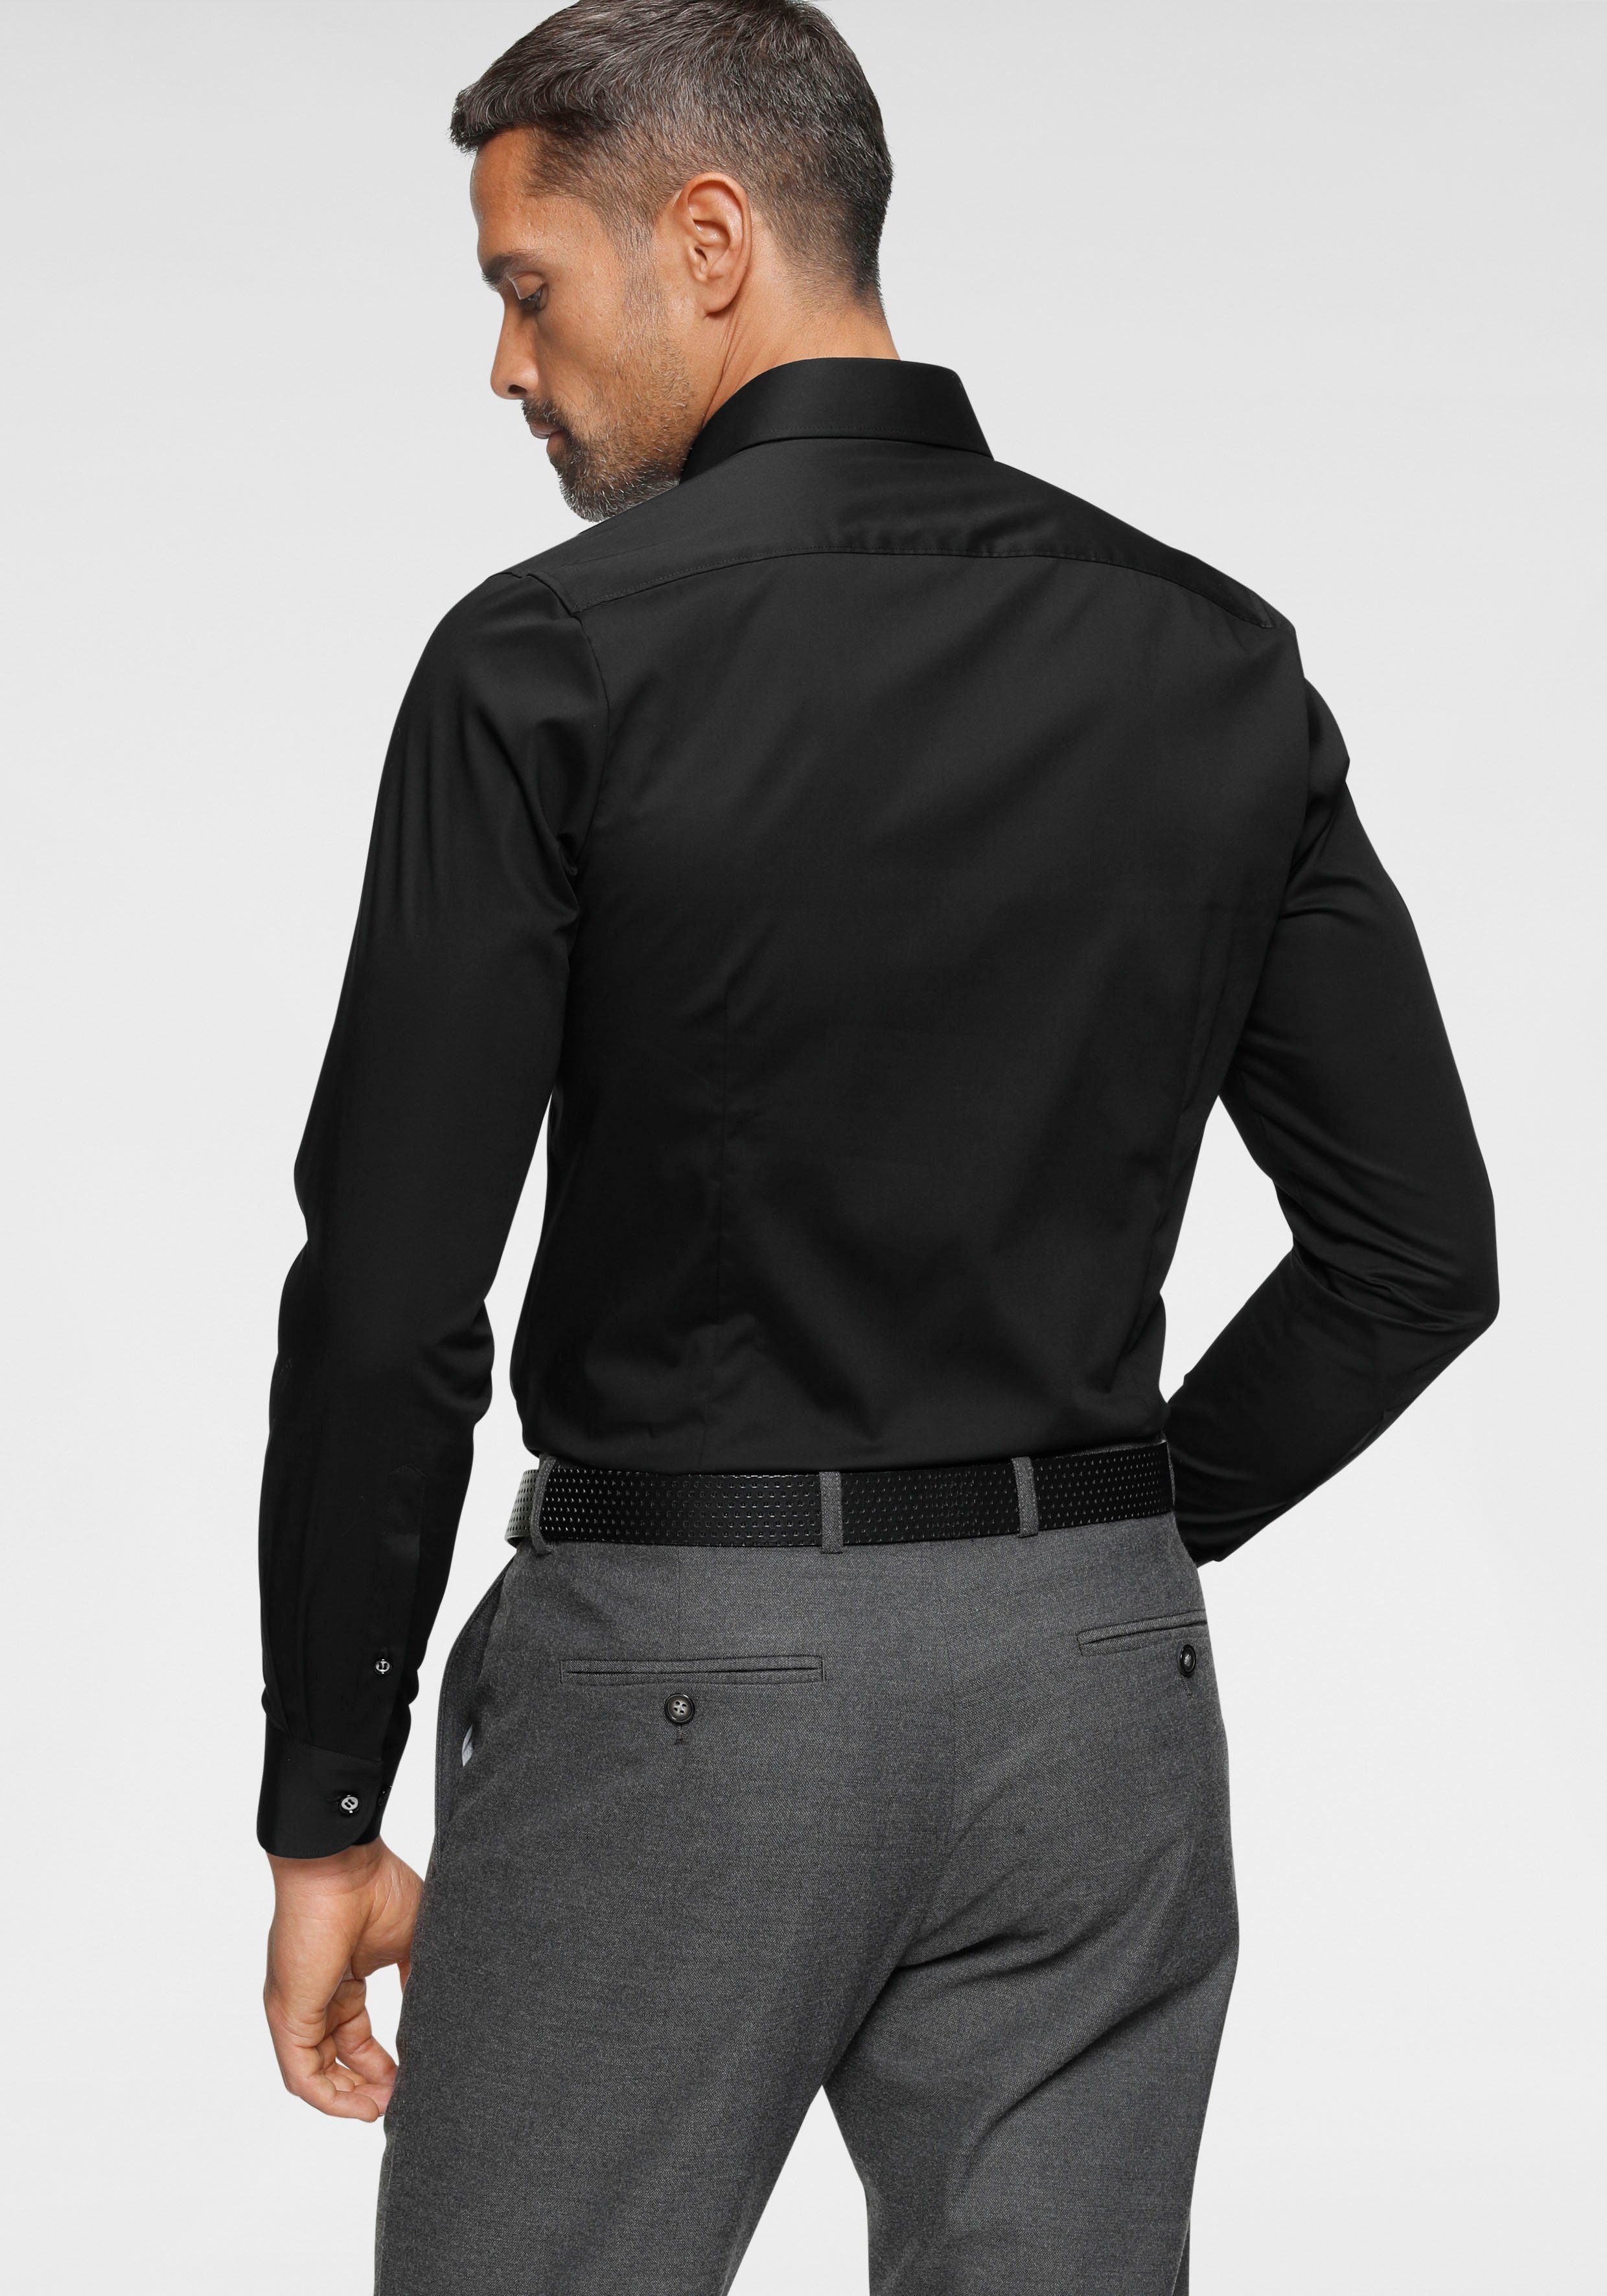 OLYMP Businesshemd Level Five body im tailliert Slim-fit/ Italienische Form, fit mit Abnähern Rücken Knopfleiste, schmale